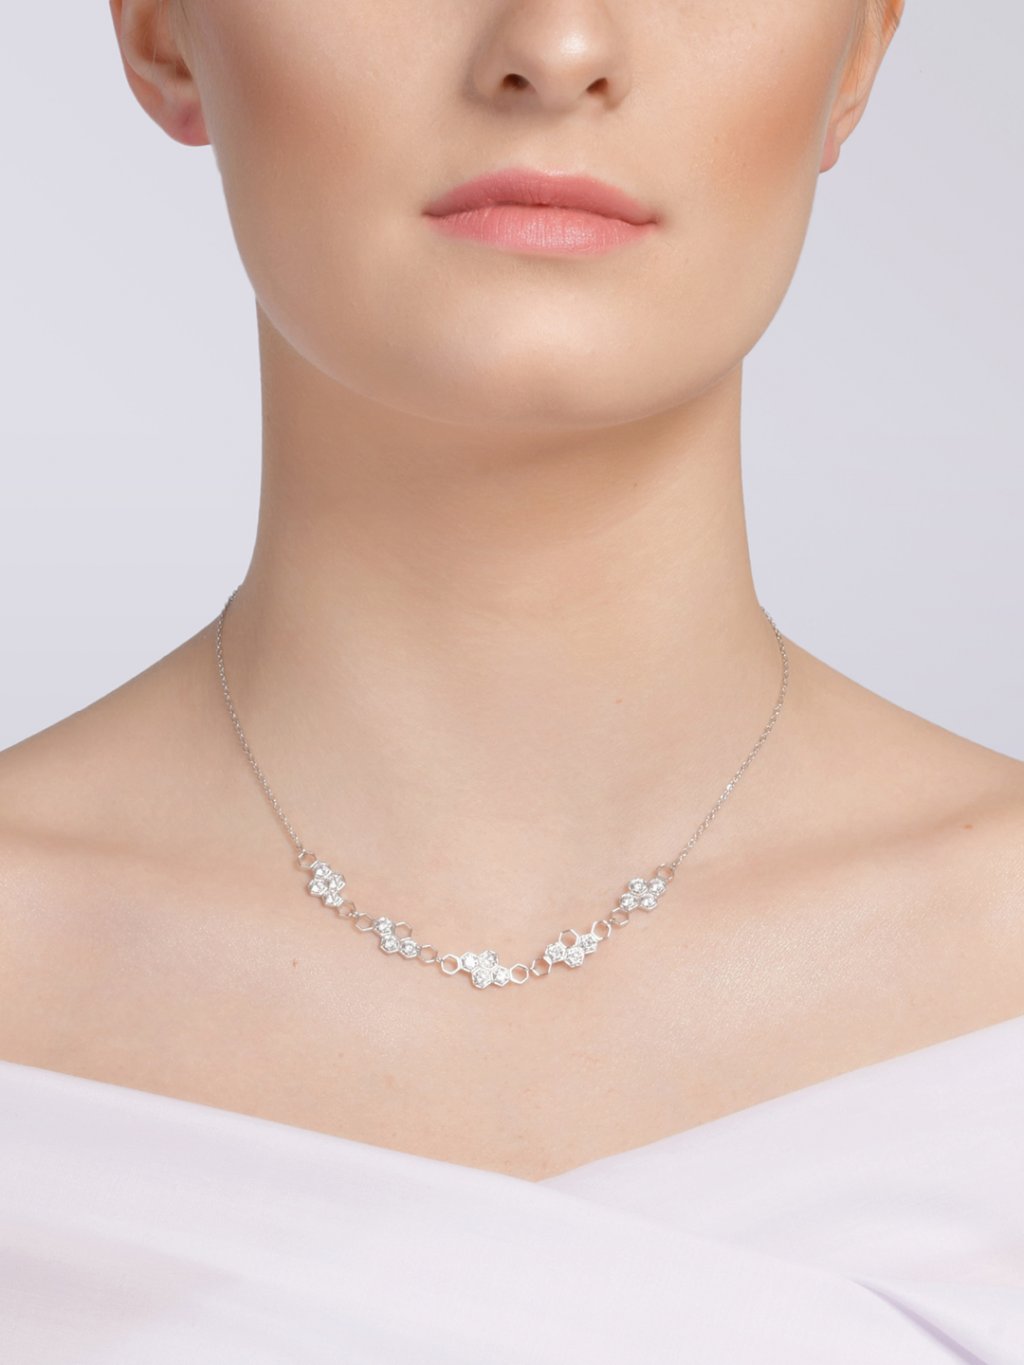 Stříbrný náhrdelník Lumina s kubickou zirkonií Preciosa, malý, čirý